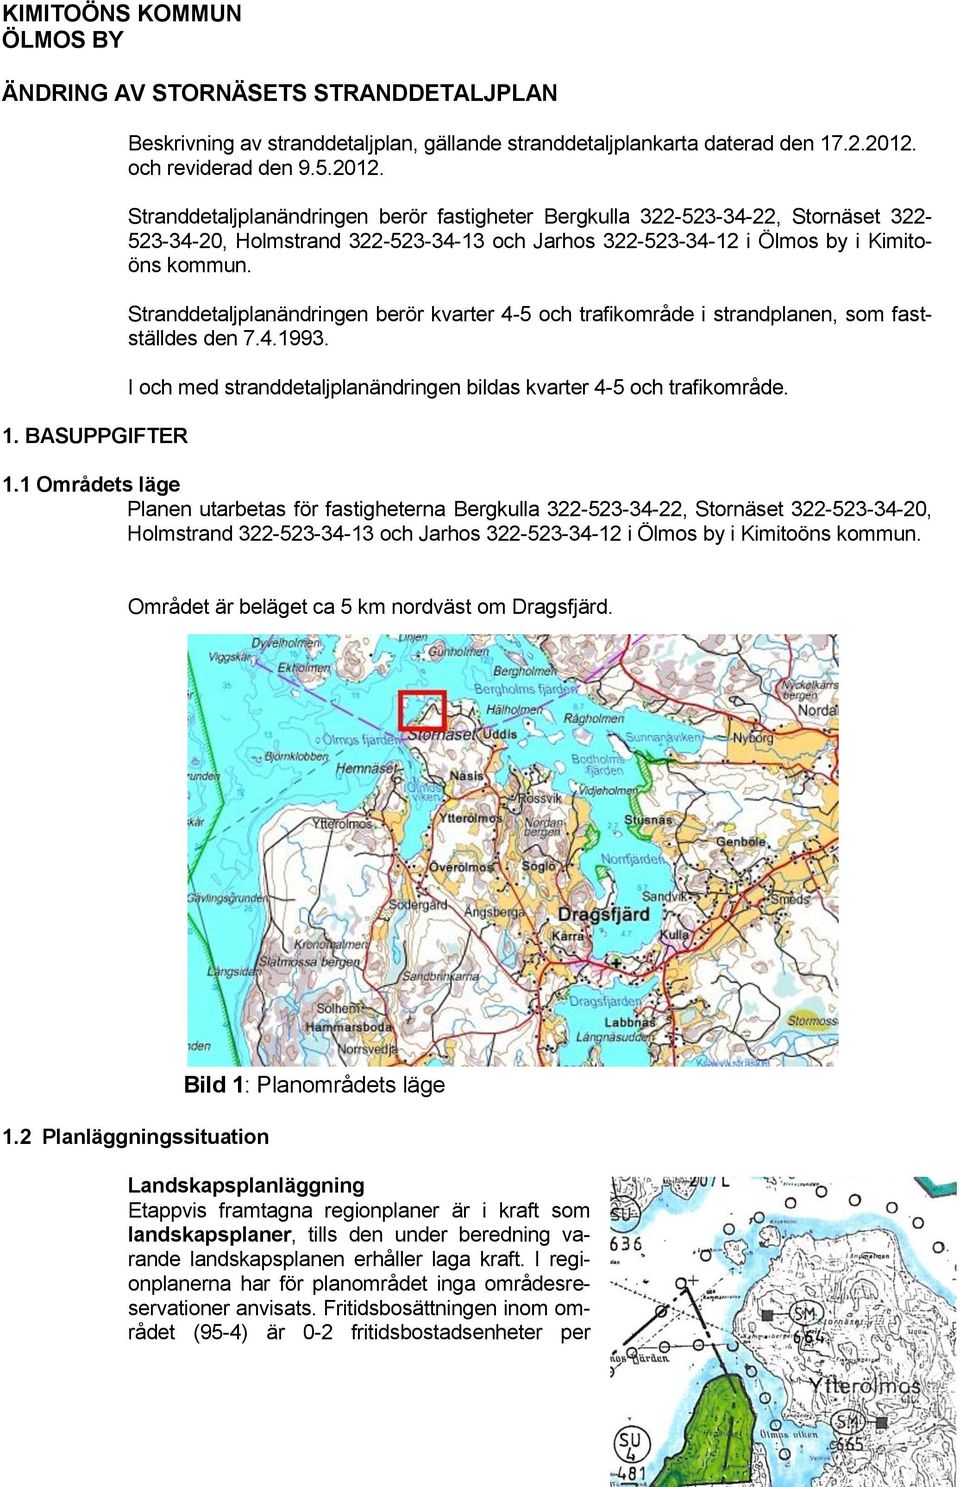 Stranddetaljplanändringen berör fastigheter Bergkulla 322-523-34-22, Stornäset 322-523-34-20, Holmstrand 322-523-34-13 och Jarhos 322-523-34-12 i Ölmos by i Kimitoöns kommun.